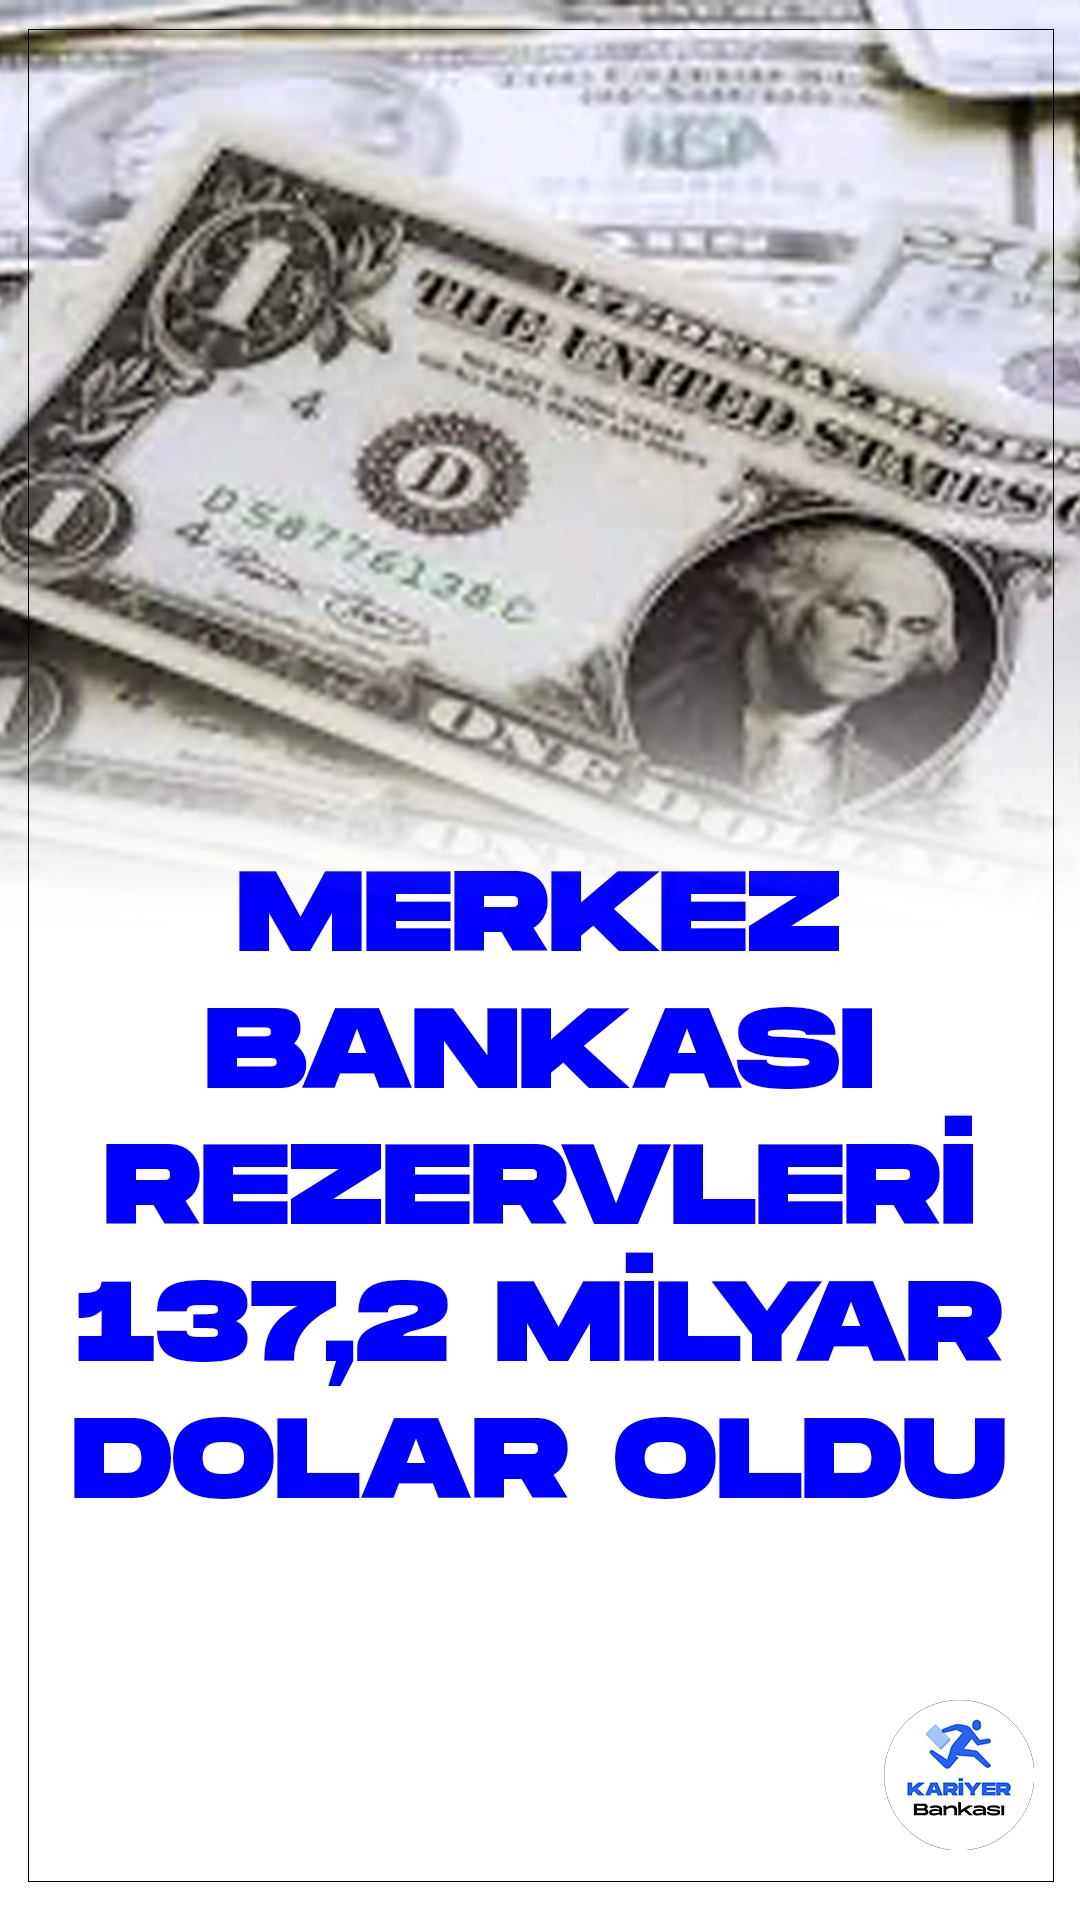 Merkez Bankası Rezervleri 137,2 Milyar Dolara Düştü.Türkiye Cumhuriyet Merkez Bankası (TCMB), 26 Ocak haftasında toplam rezervlerini bir önceki haftaya göre 930 milyon dolar azaltarak 137 milyar 161 milyon dolara çekti. TCMB'nin haftalık para ve banka istatistikleri, rezervlerdeki bu düşüşü gösteriyor.